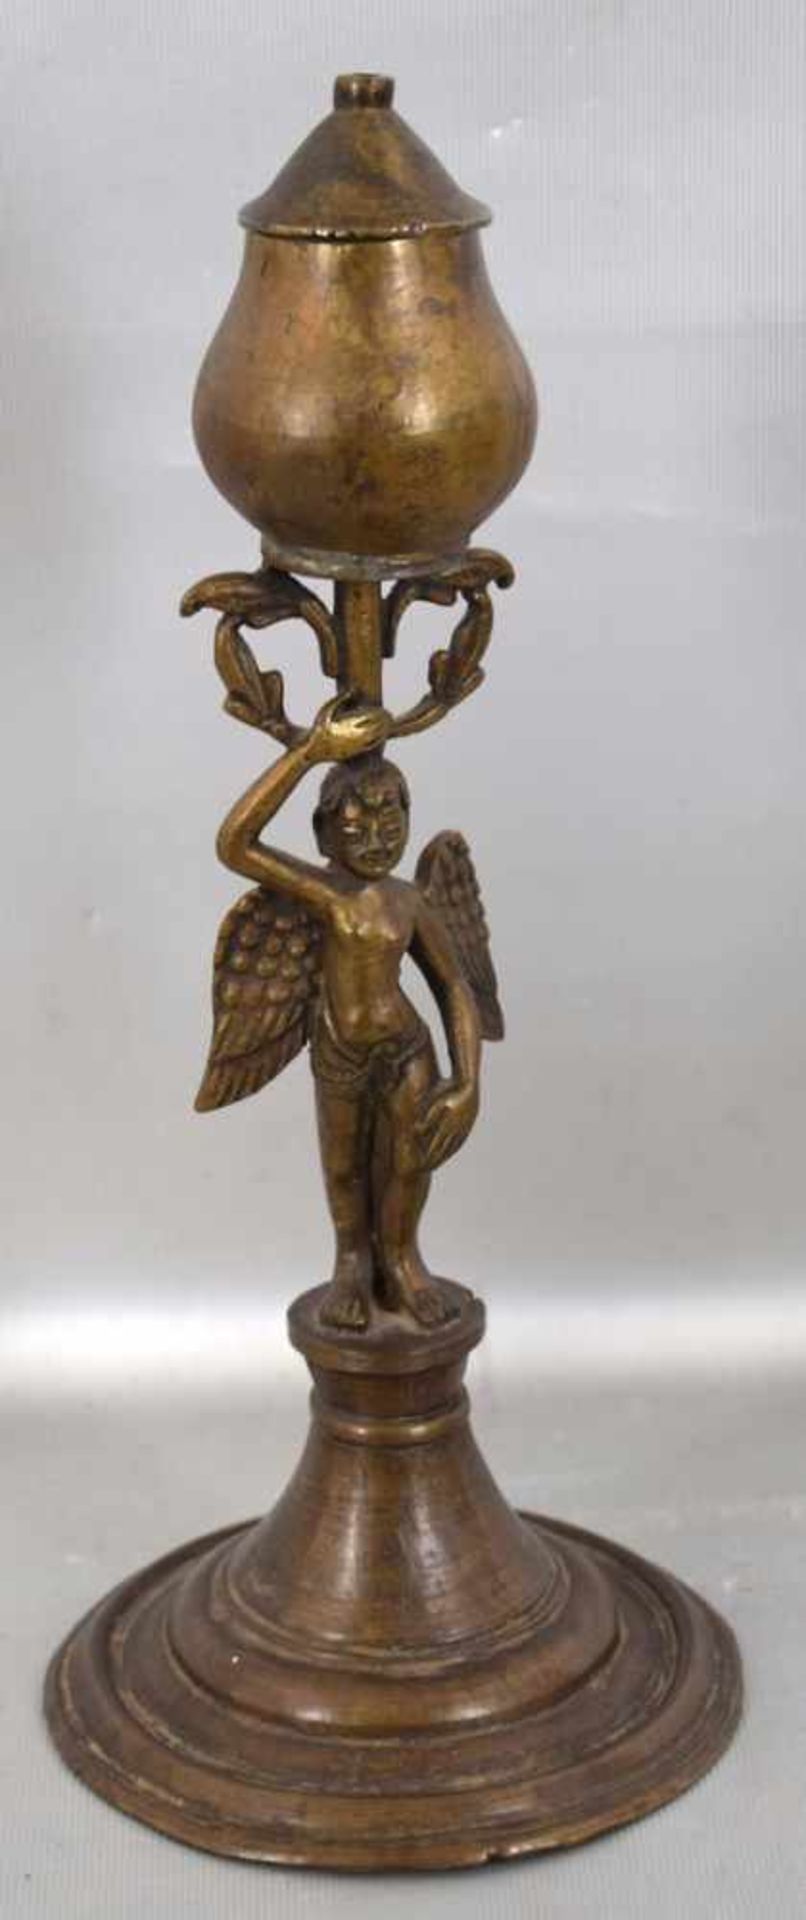 Petroleumlampe Bronze, runder Fuß, Schaft mit figürlicher Darstellung eines Engels, H 29 cm, 18.